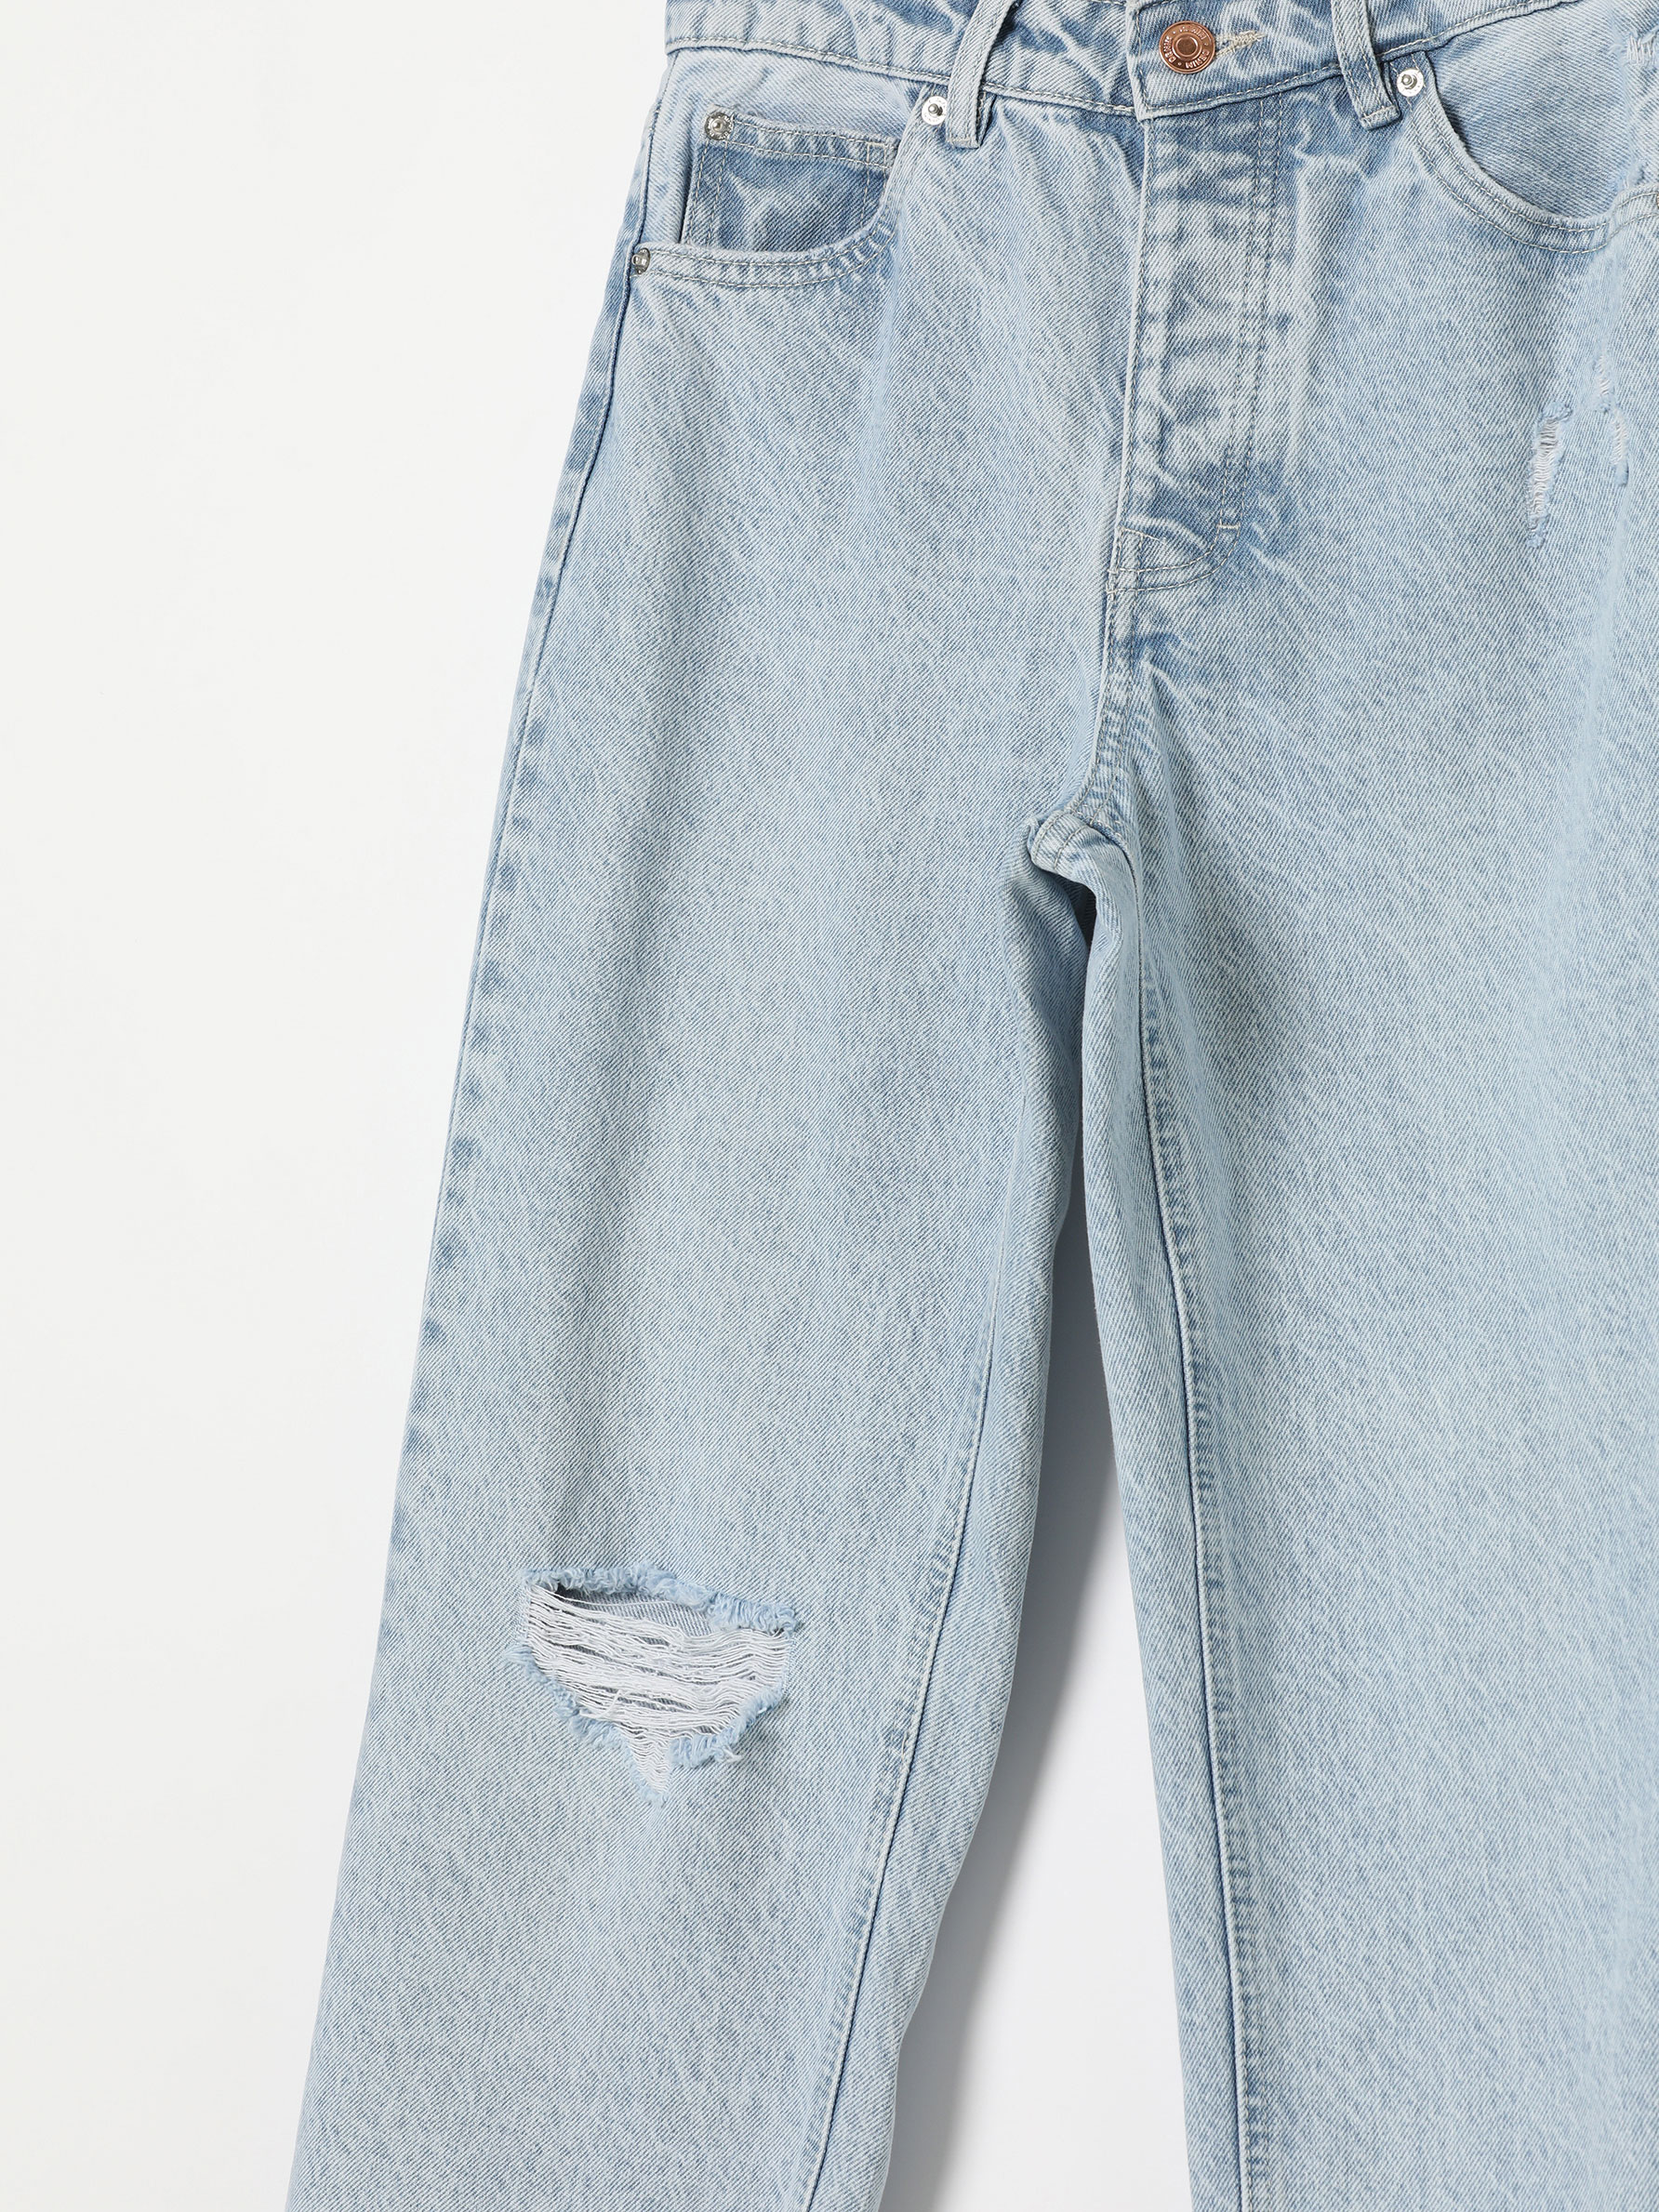 Rabatt 68 % Blau/Mehrfarbig 38 Lefties Straight jeans DAMEN Jeans Straight jeans Stickerei 